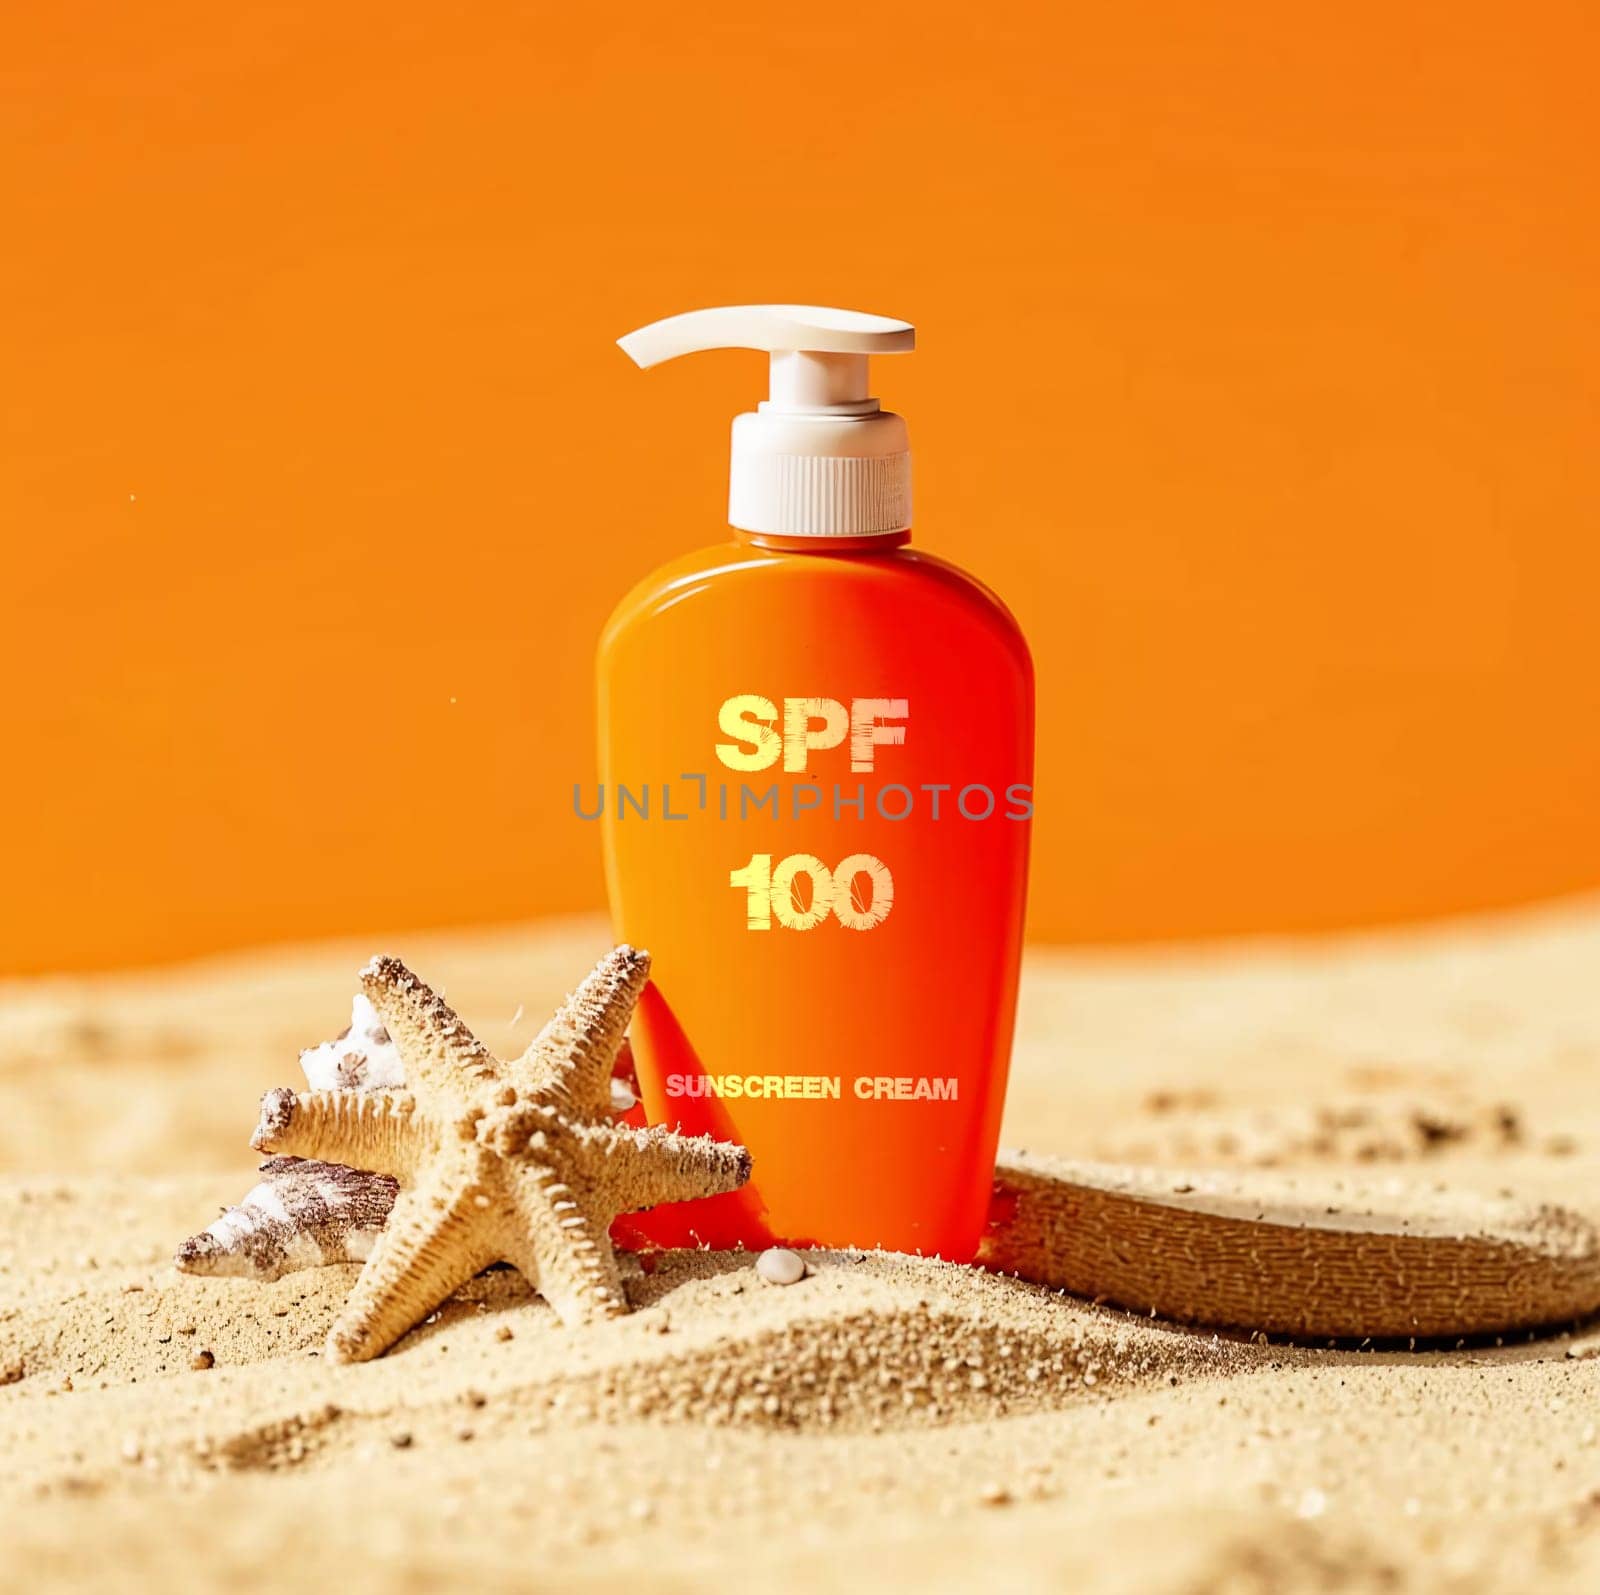 SPF 100 sunscreen in orange bottle by VeronikaAngo